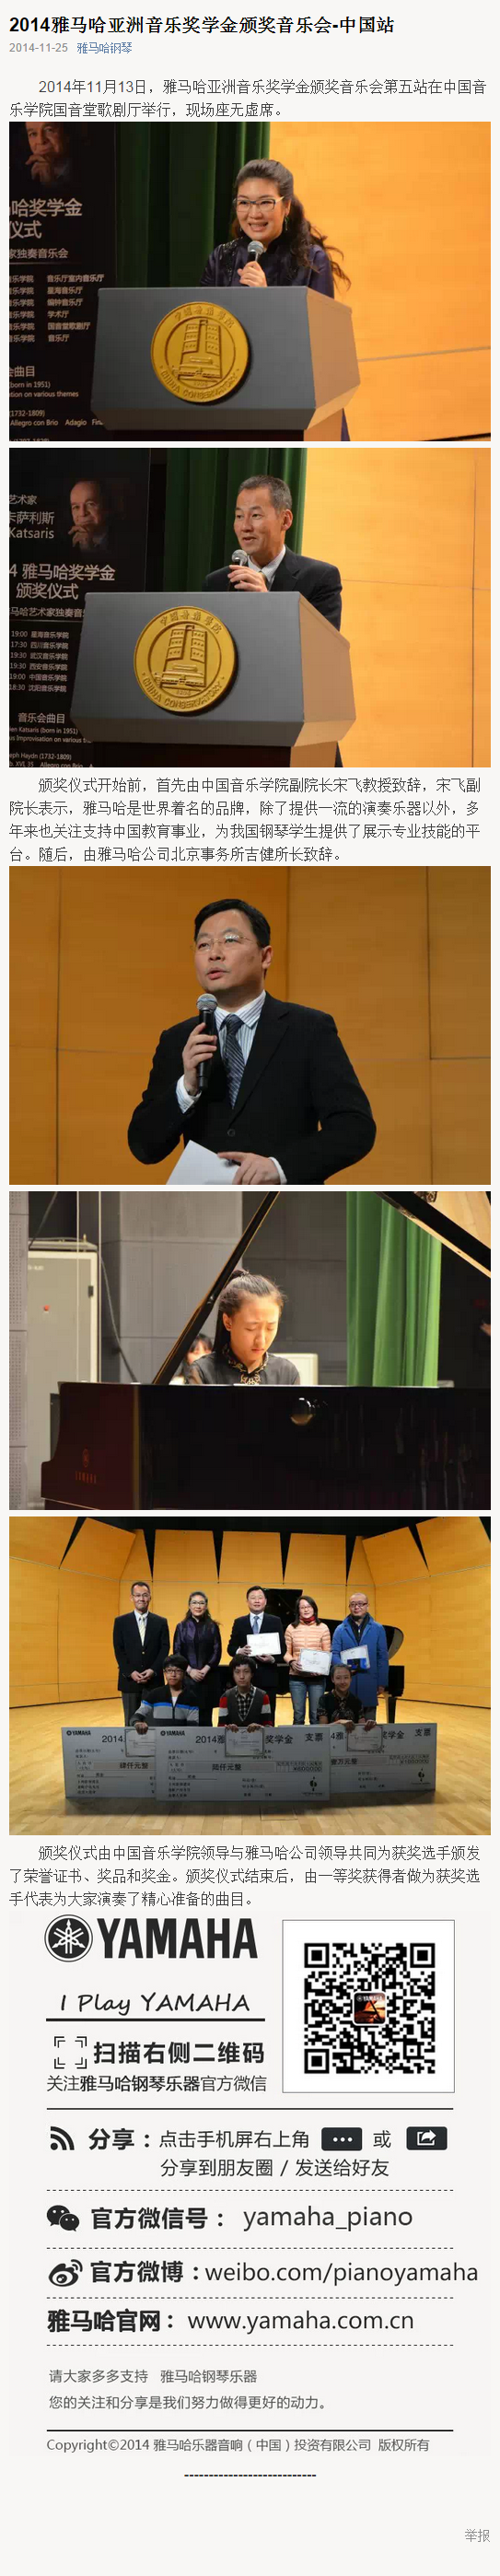 2014年度雅马哈音乐奖学金系列活动-中国音乐学院